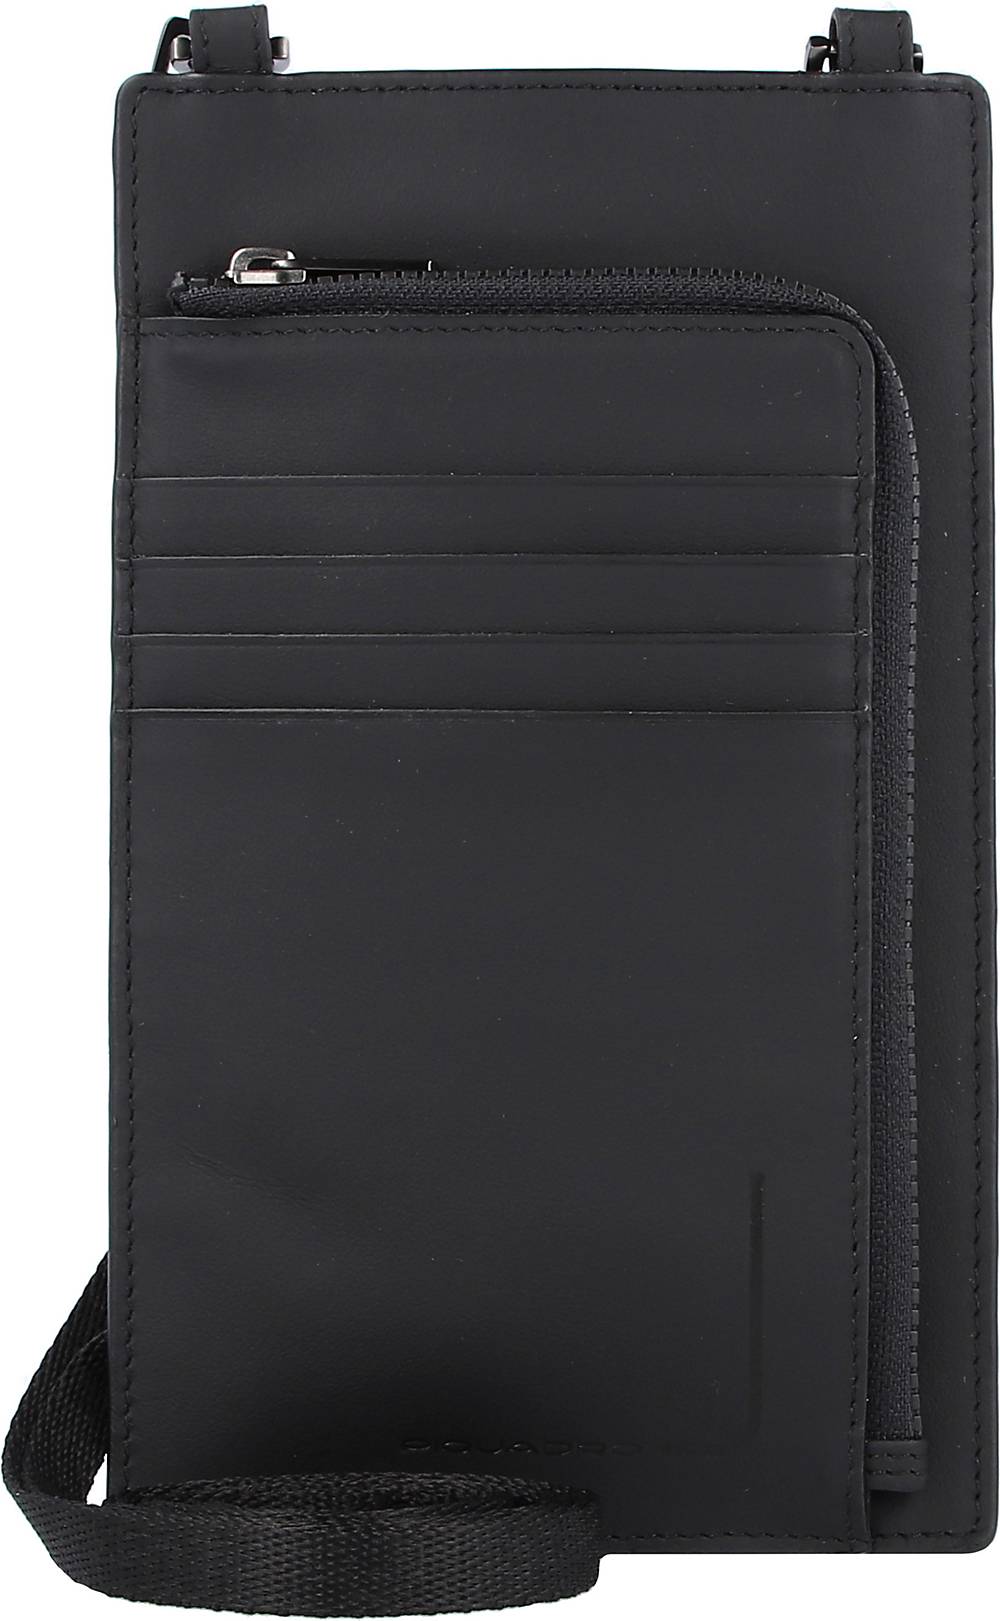 Piquadro, Pqj Handytasche Rfid Leder 11 Cm in schwarz, Handyhüllen & Zubehör für Damen